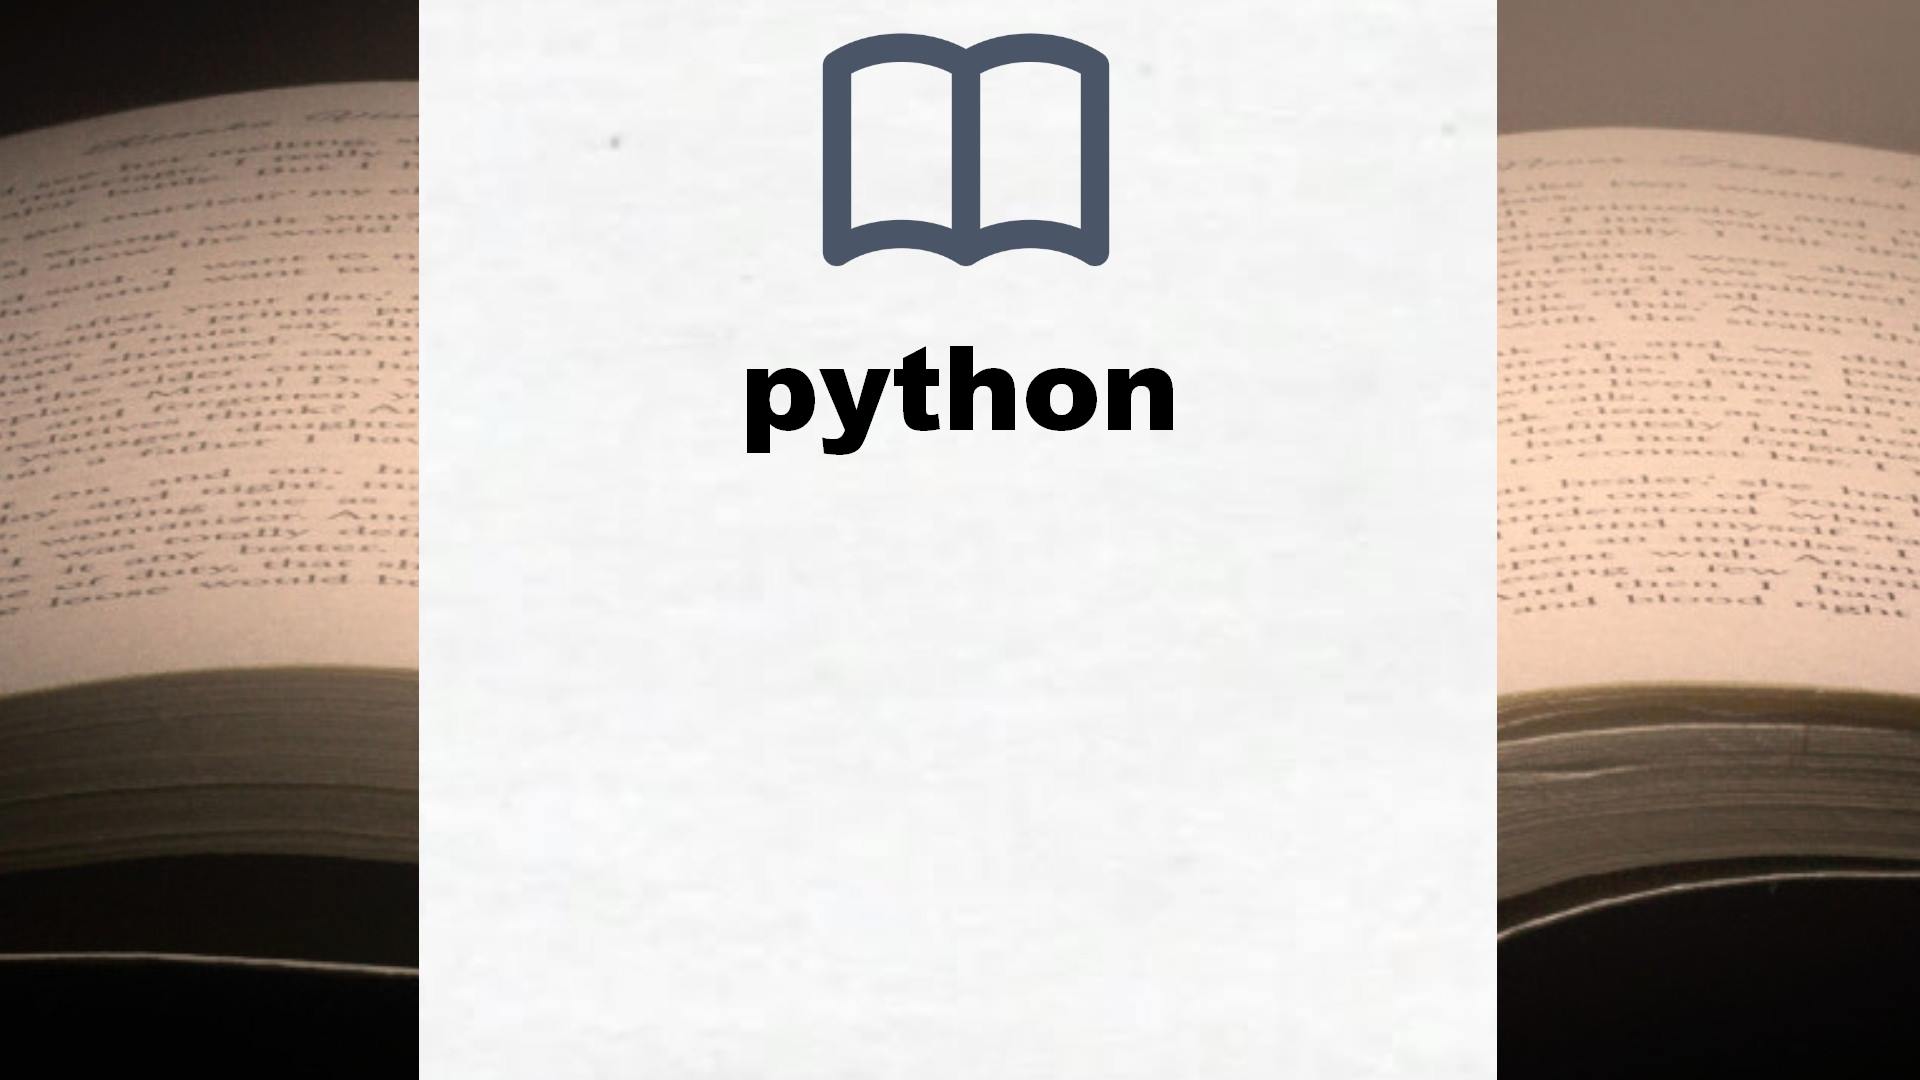 Libros sobre python